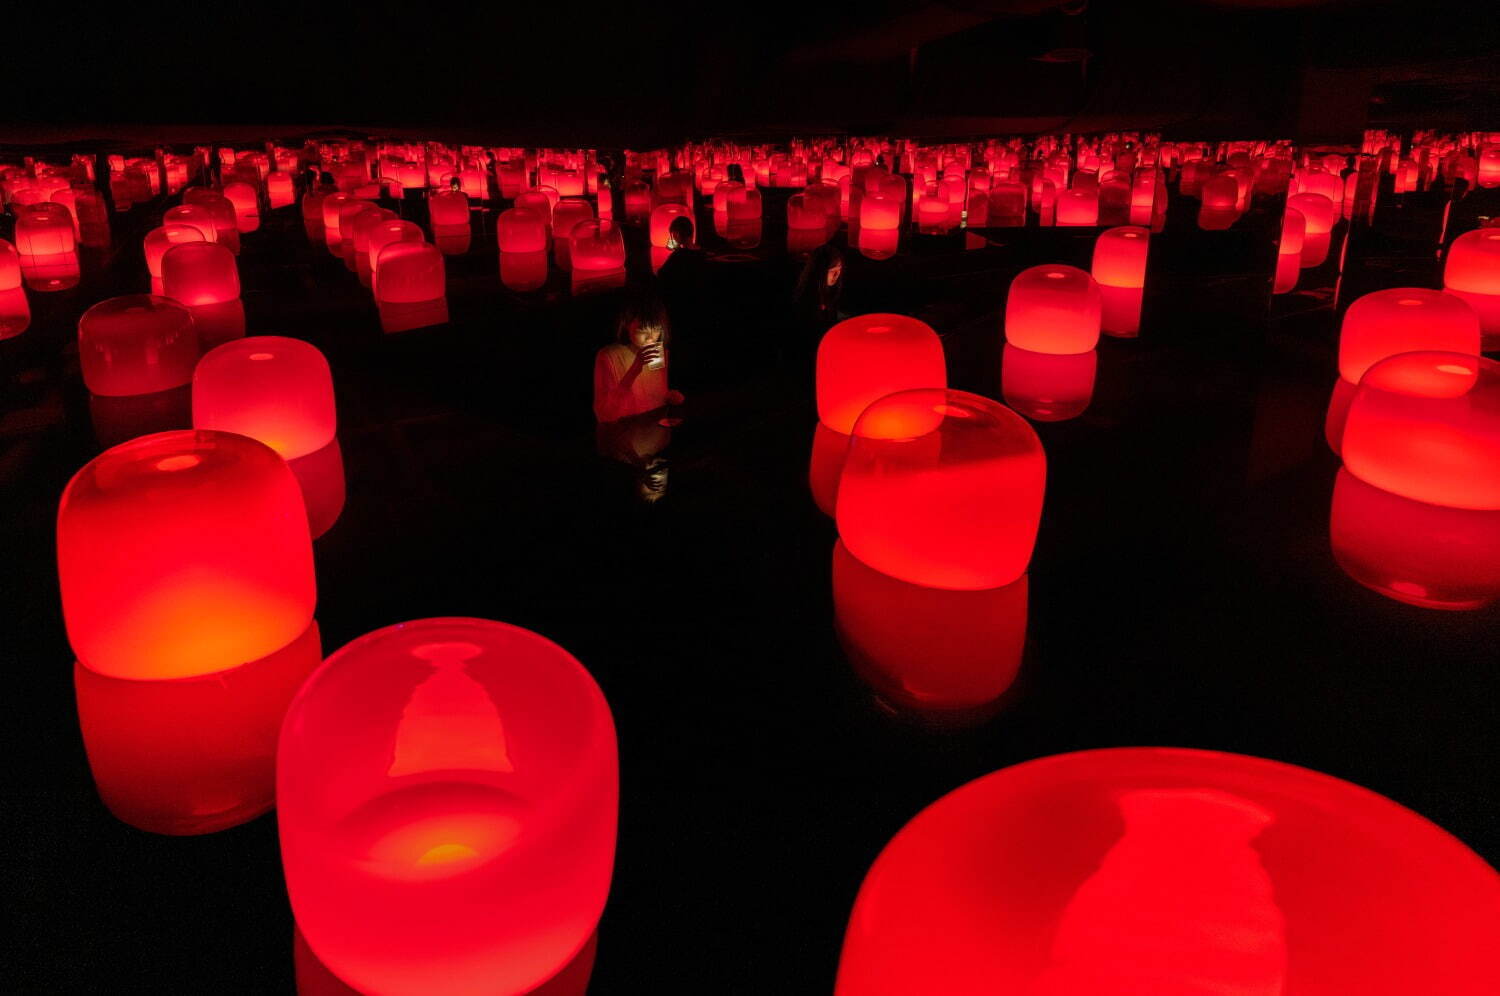 旧醤油蔵の共鳴する浮遊ランプ / Floating Lamps in Spontaneous Order - the Old Soy Sauce Storehouses
teamLab, 2021, Interactive Installation, Murano Glass, LED, Endless, Sound: Hideaki Takahashi + teamLab